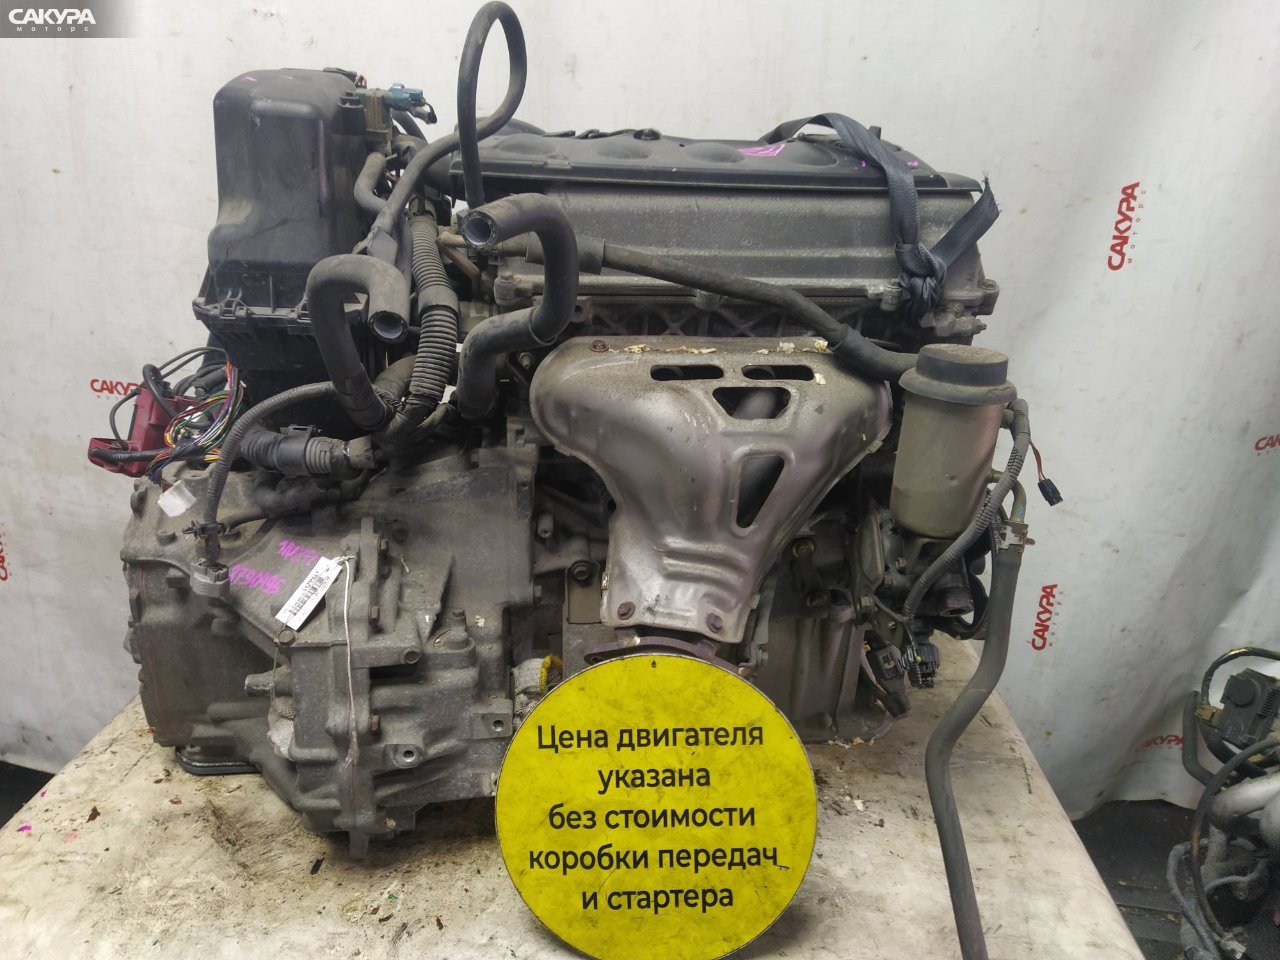 Двигатель Toyota BB NCP31 1NZ-FE: купить в Сакура Красноярск.